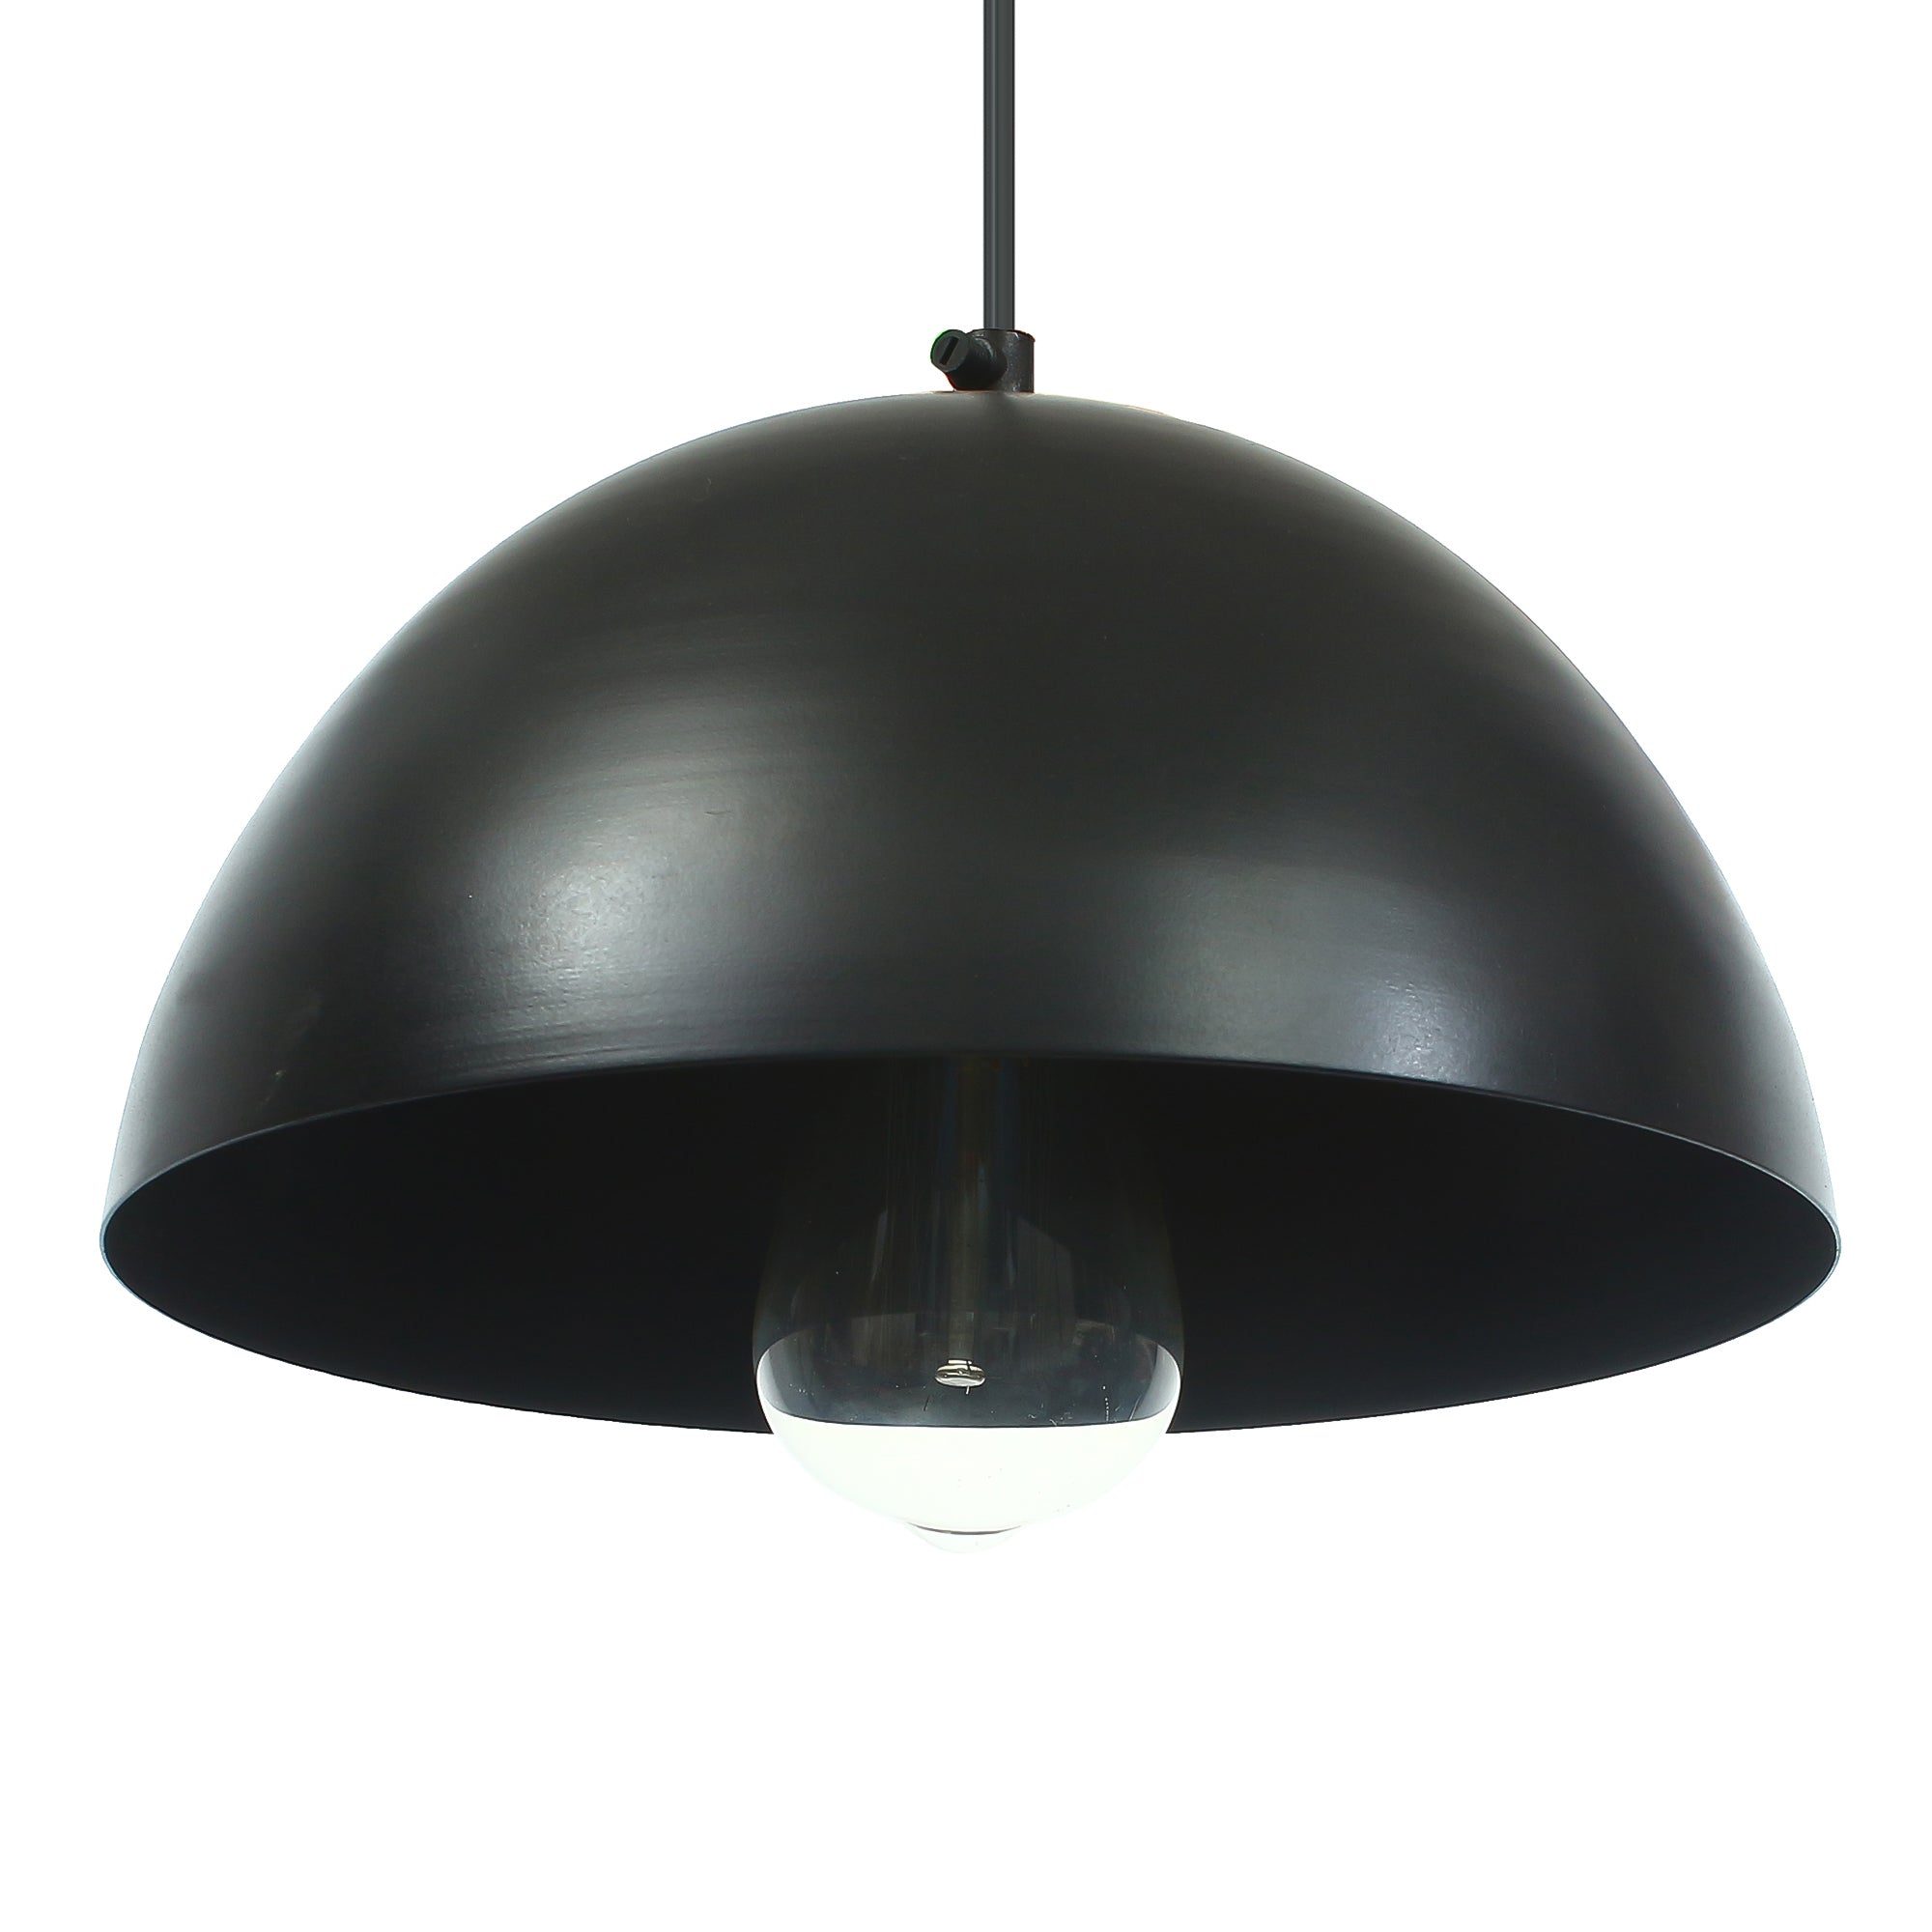 Shining Black Glossy Finish Pendant Light, 10" Diameter Ceiling Hanging Lamp for Home/Living Room/Offices/Restaurants 2